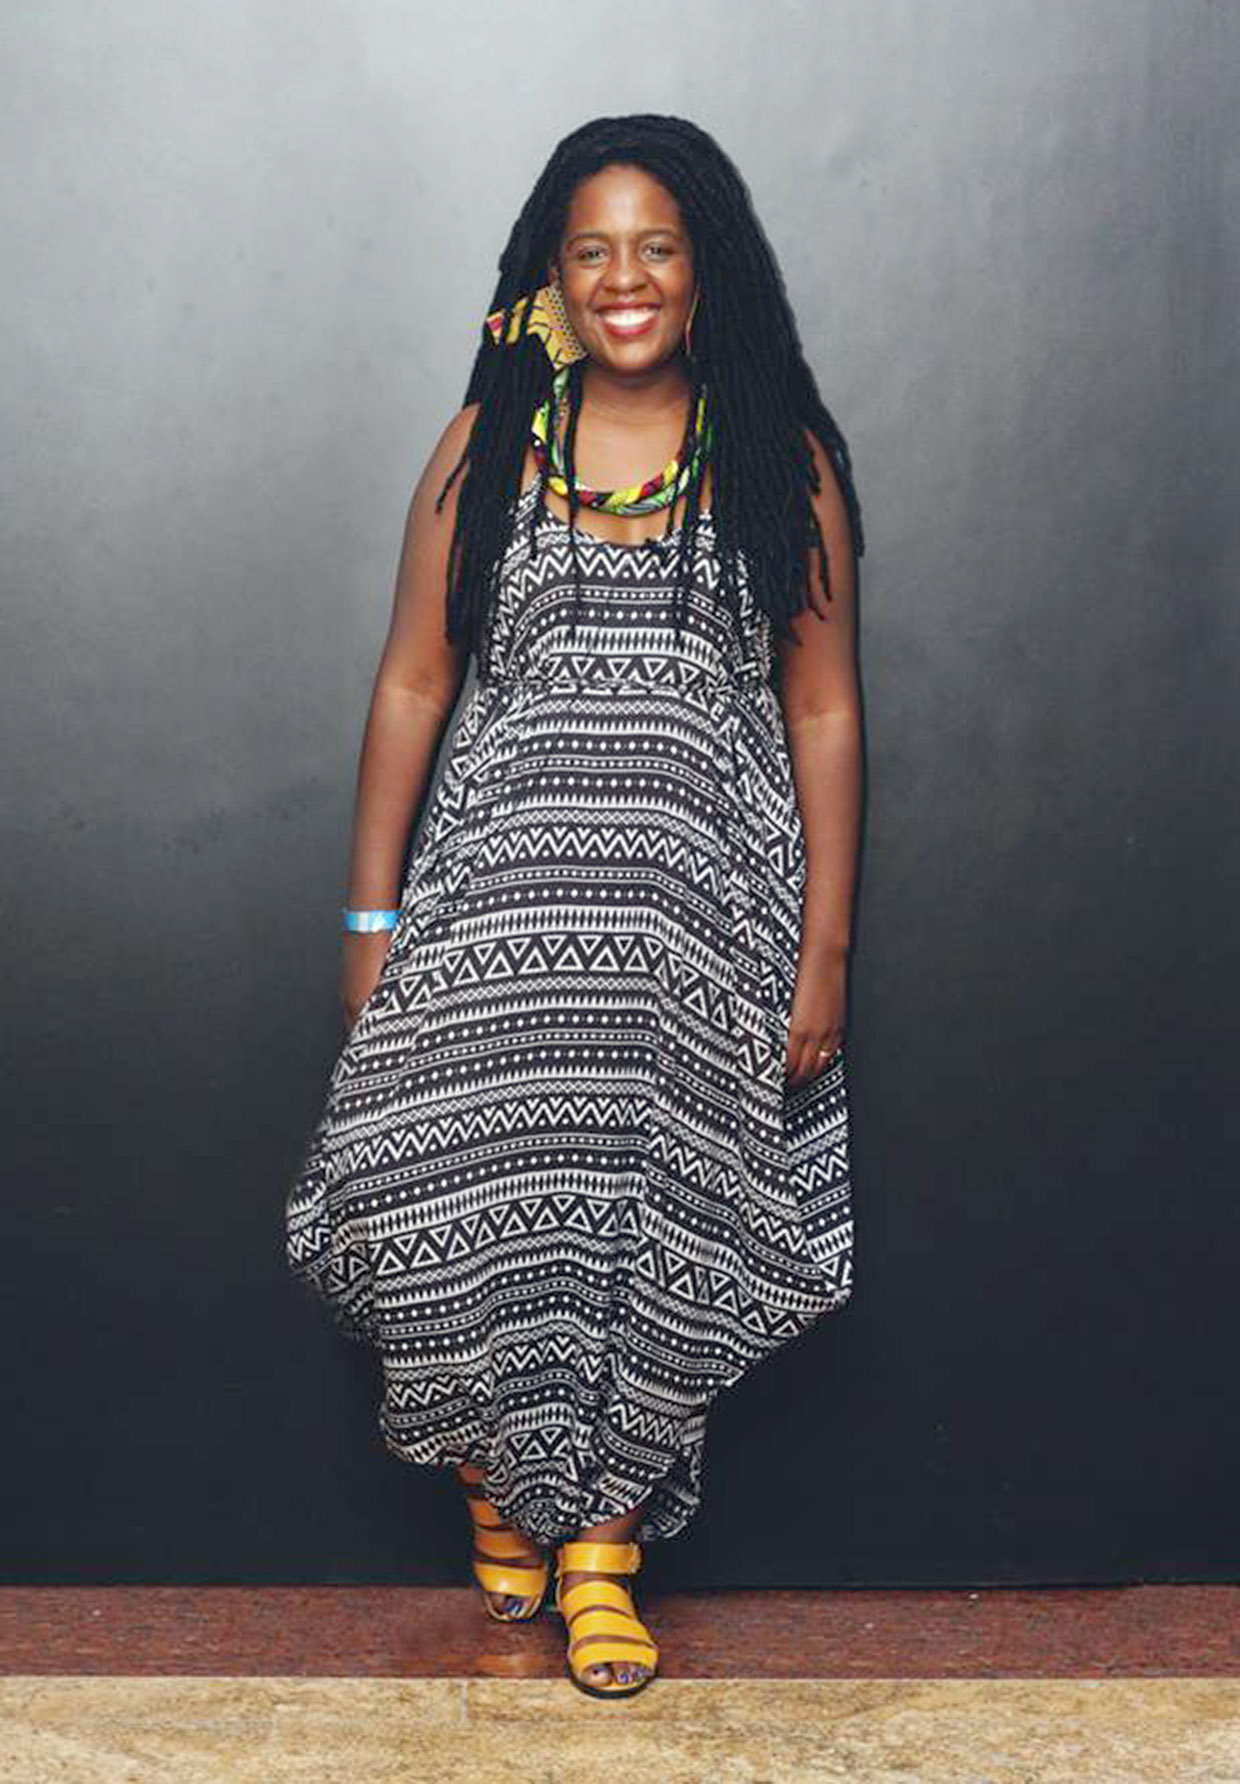 Empresária da moda afro, Ana Paula expõe marca própria "Xongani"